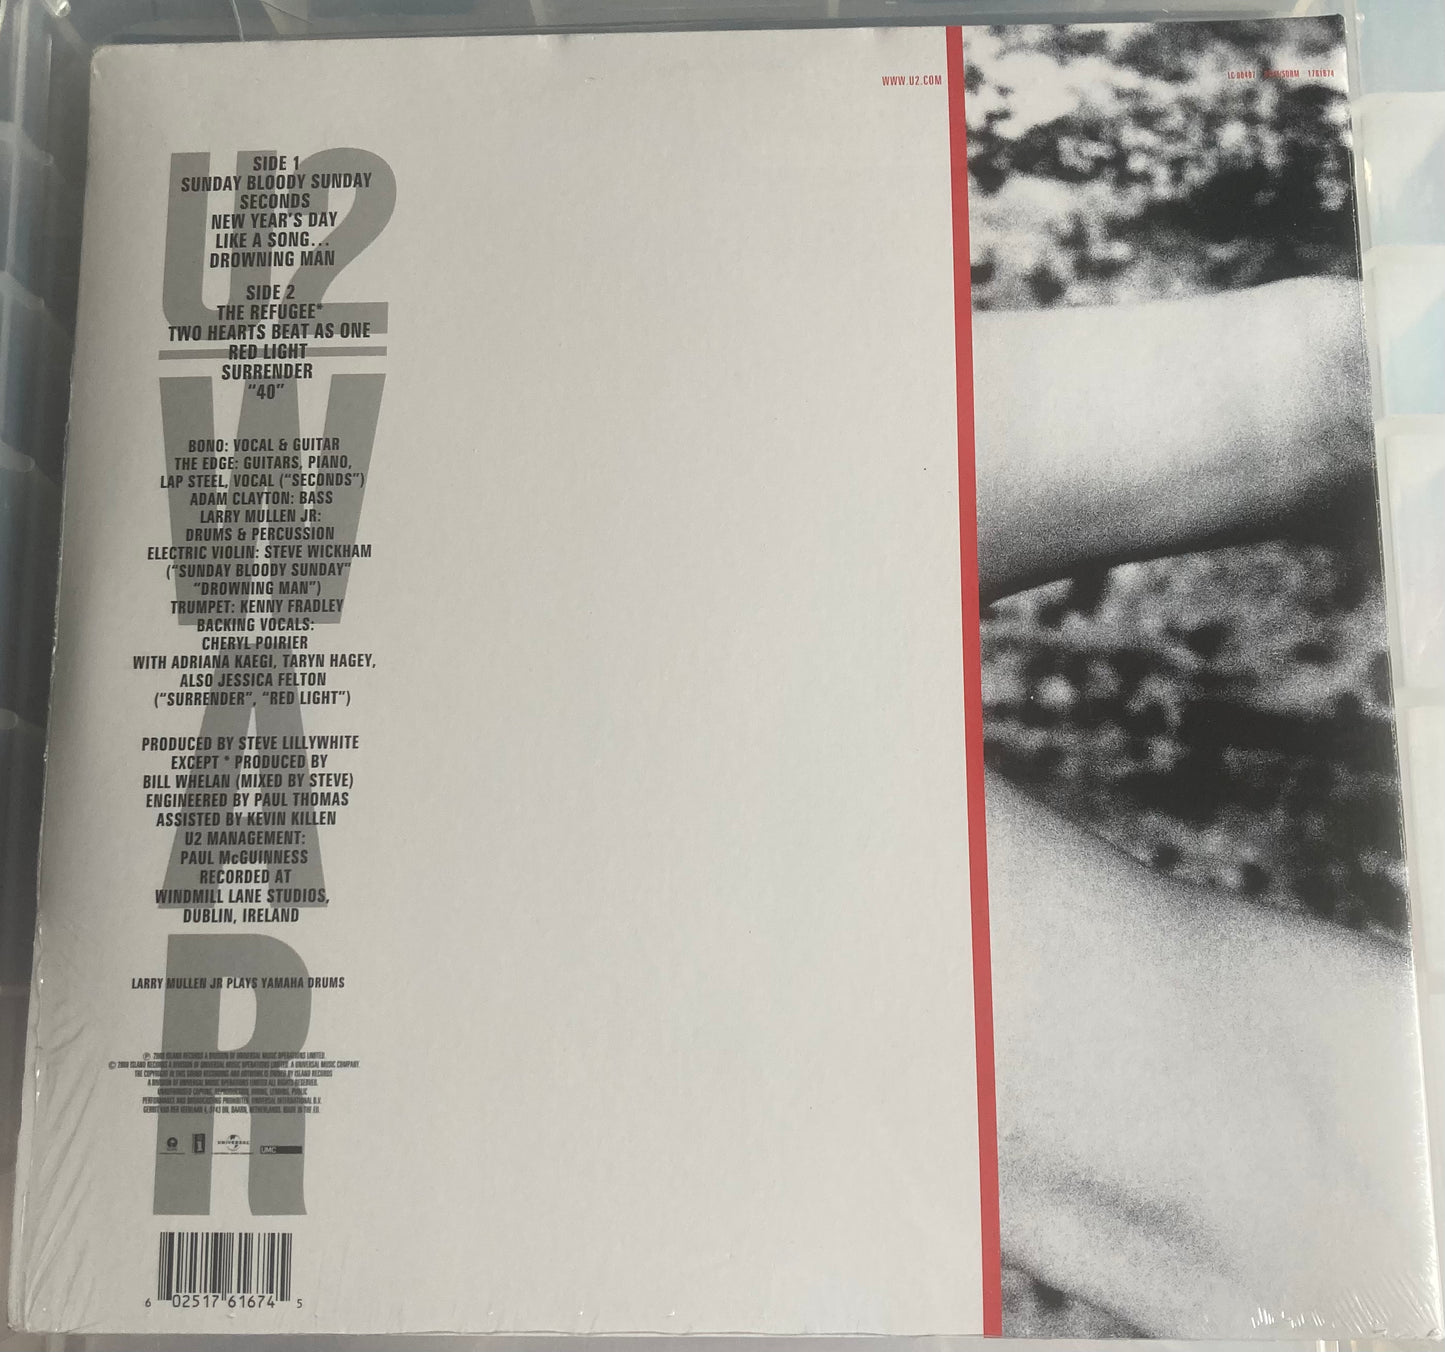 The back of 'U2 - War' on vinyl